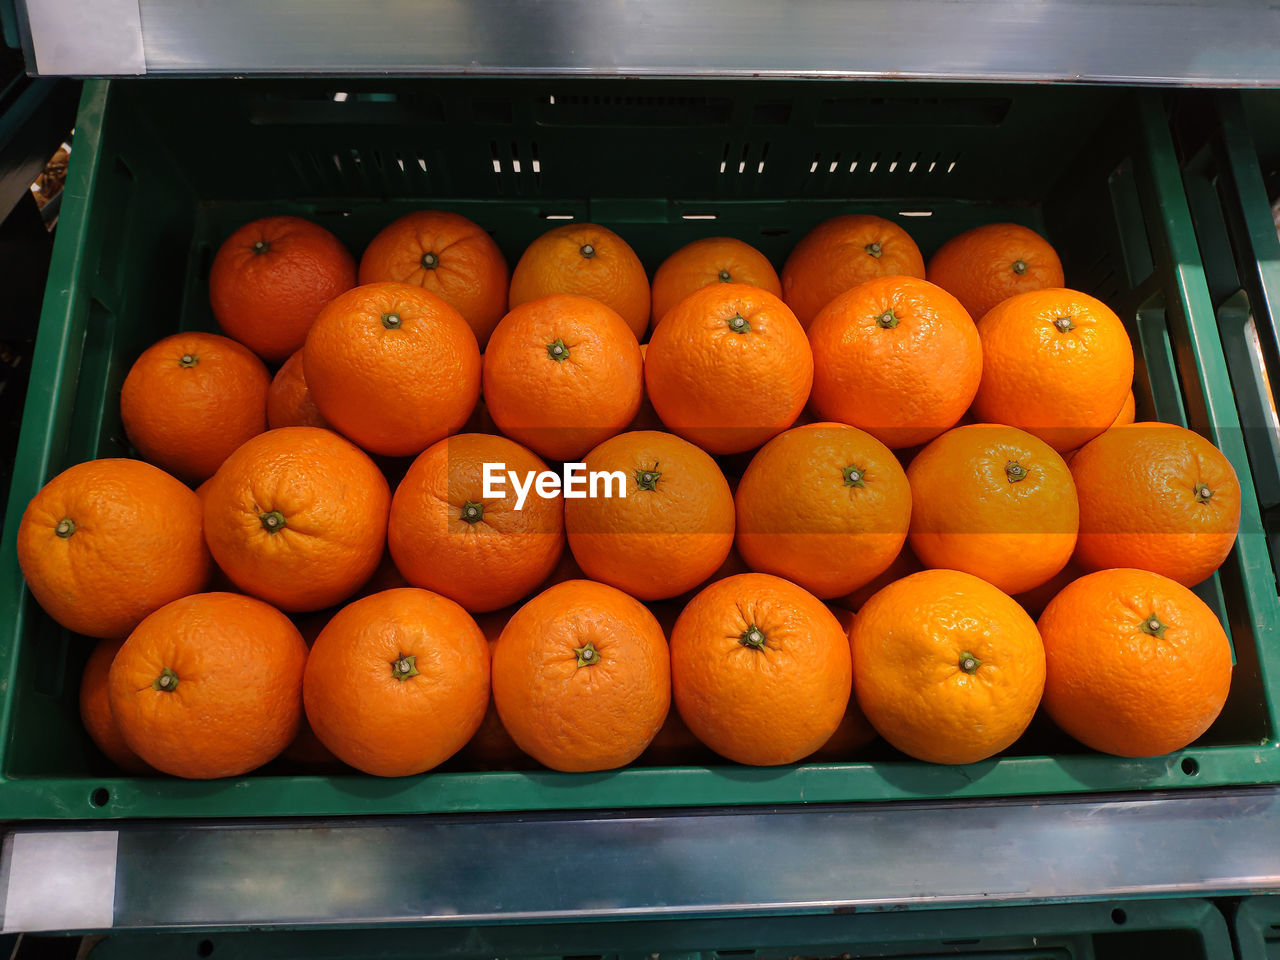 Oranges on basket in supermarket.